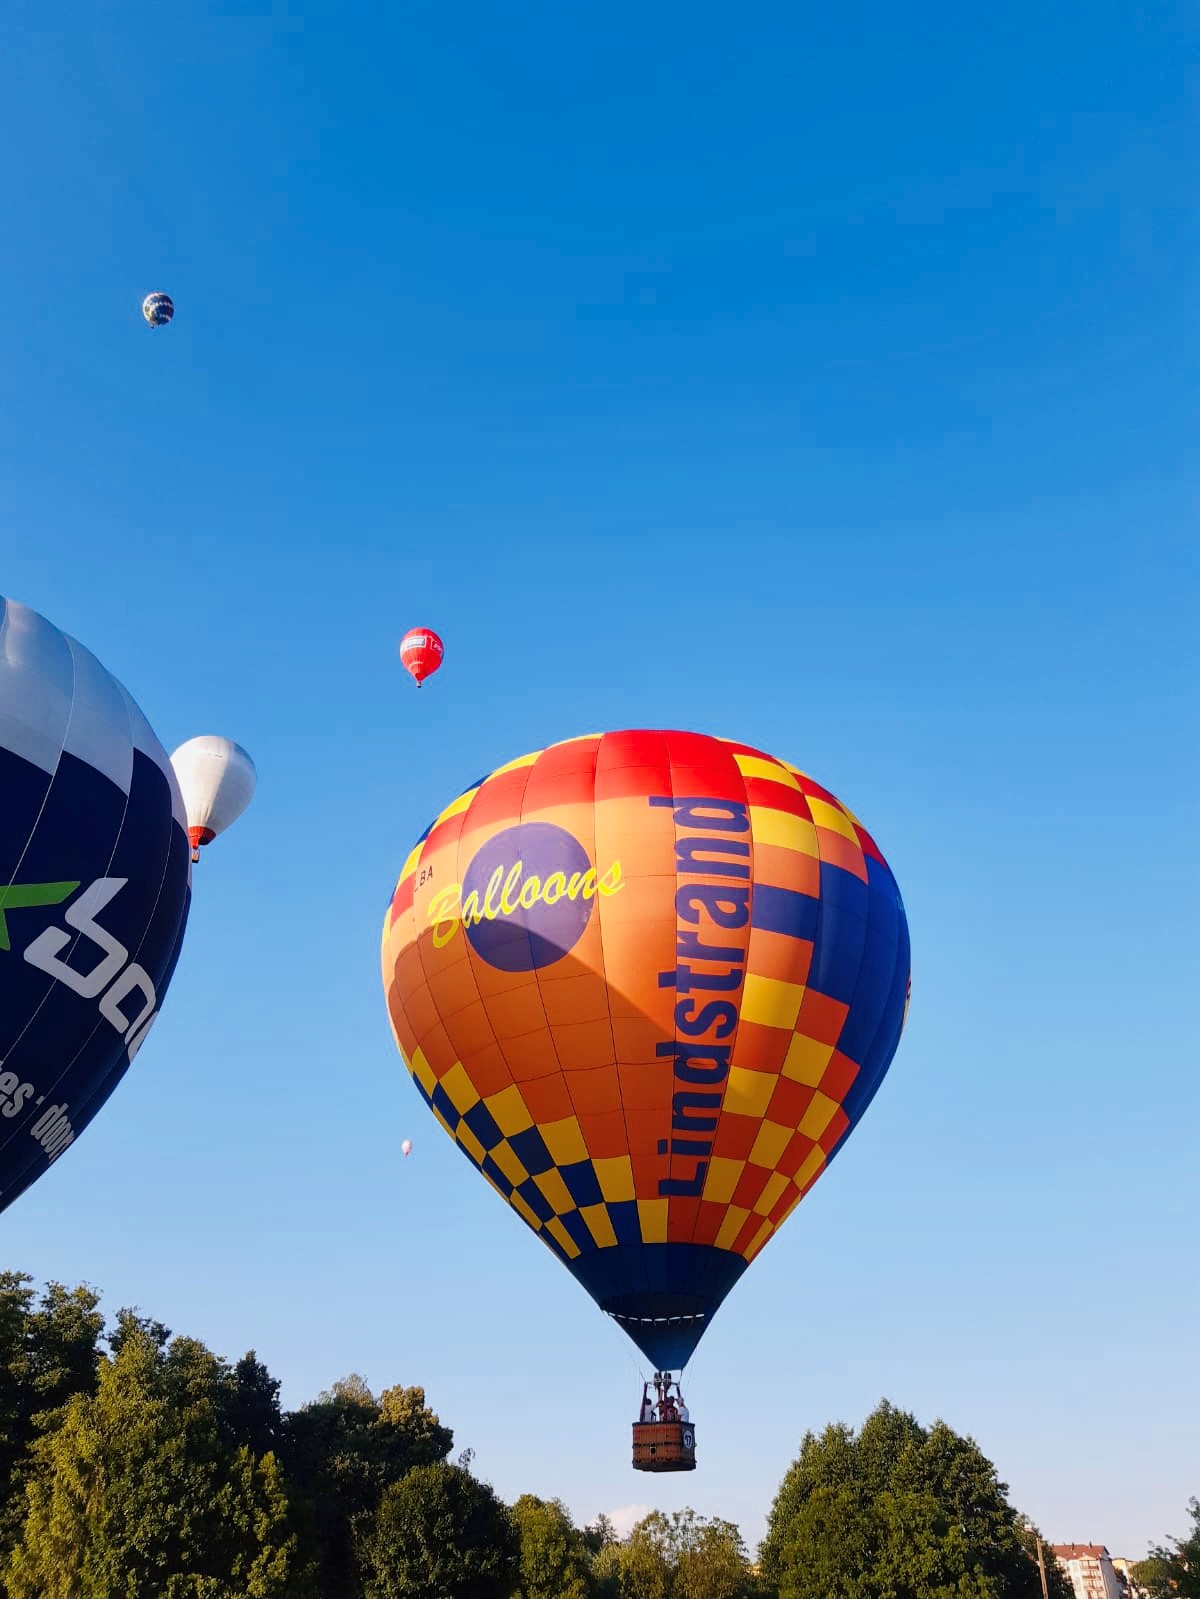 IMGW-PIB METEO POLSKA a Twitter: "W ostatnich dniach w #Rypin można było  podziwiać Zawody Balonowe. Balony na tle bezchmurnego nieba wyglądały  fantastycznie 🥰 #IMGW #zawodybalonowe #lotbalonem https://t.co/eAXt0Xk7kV"  / Twitter